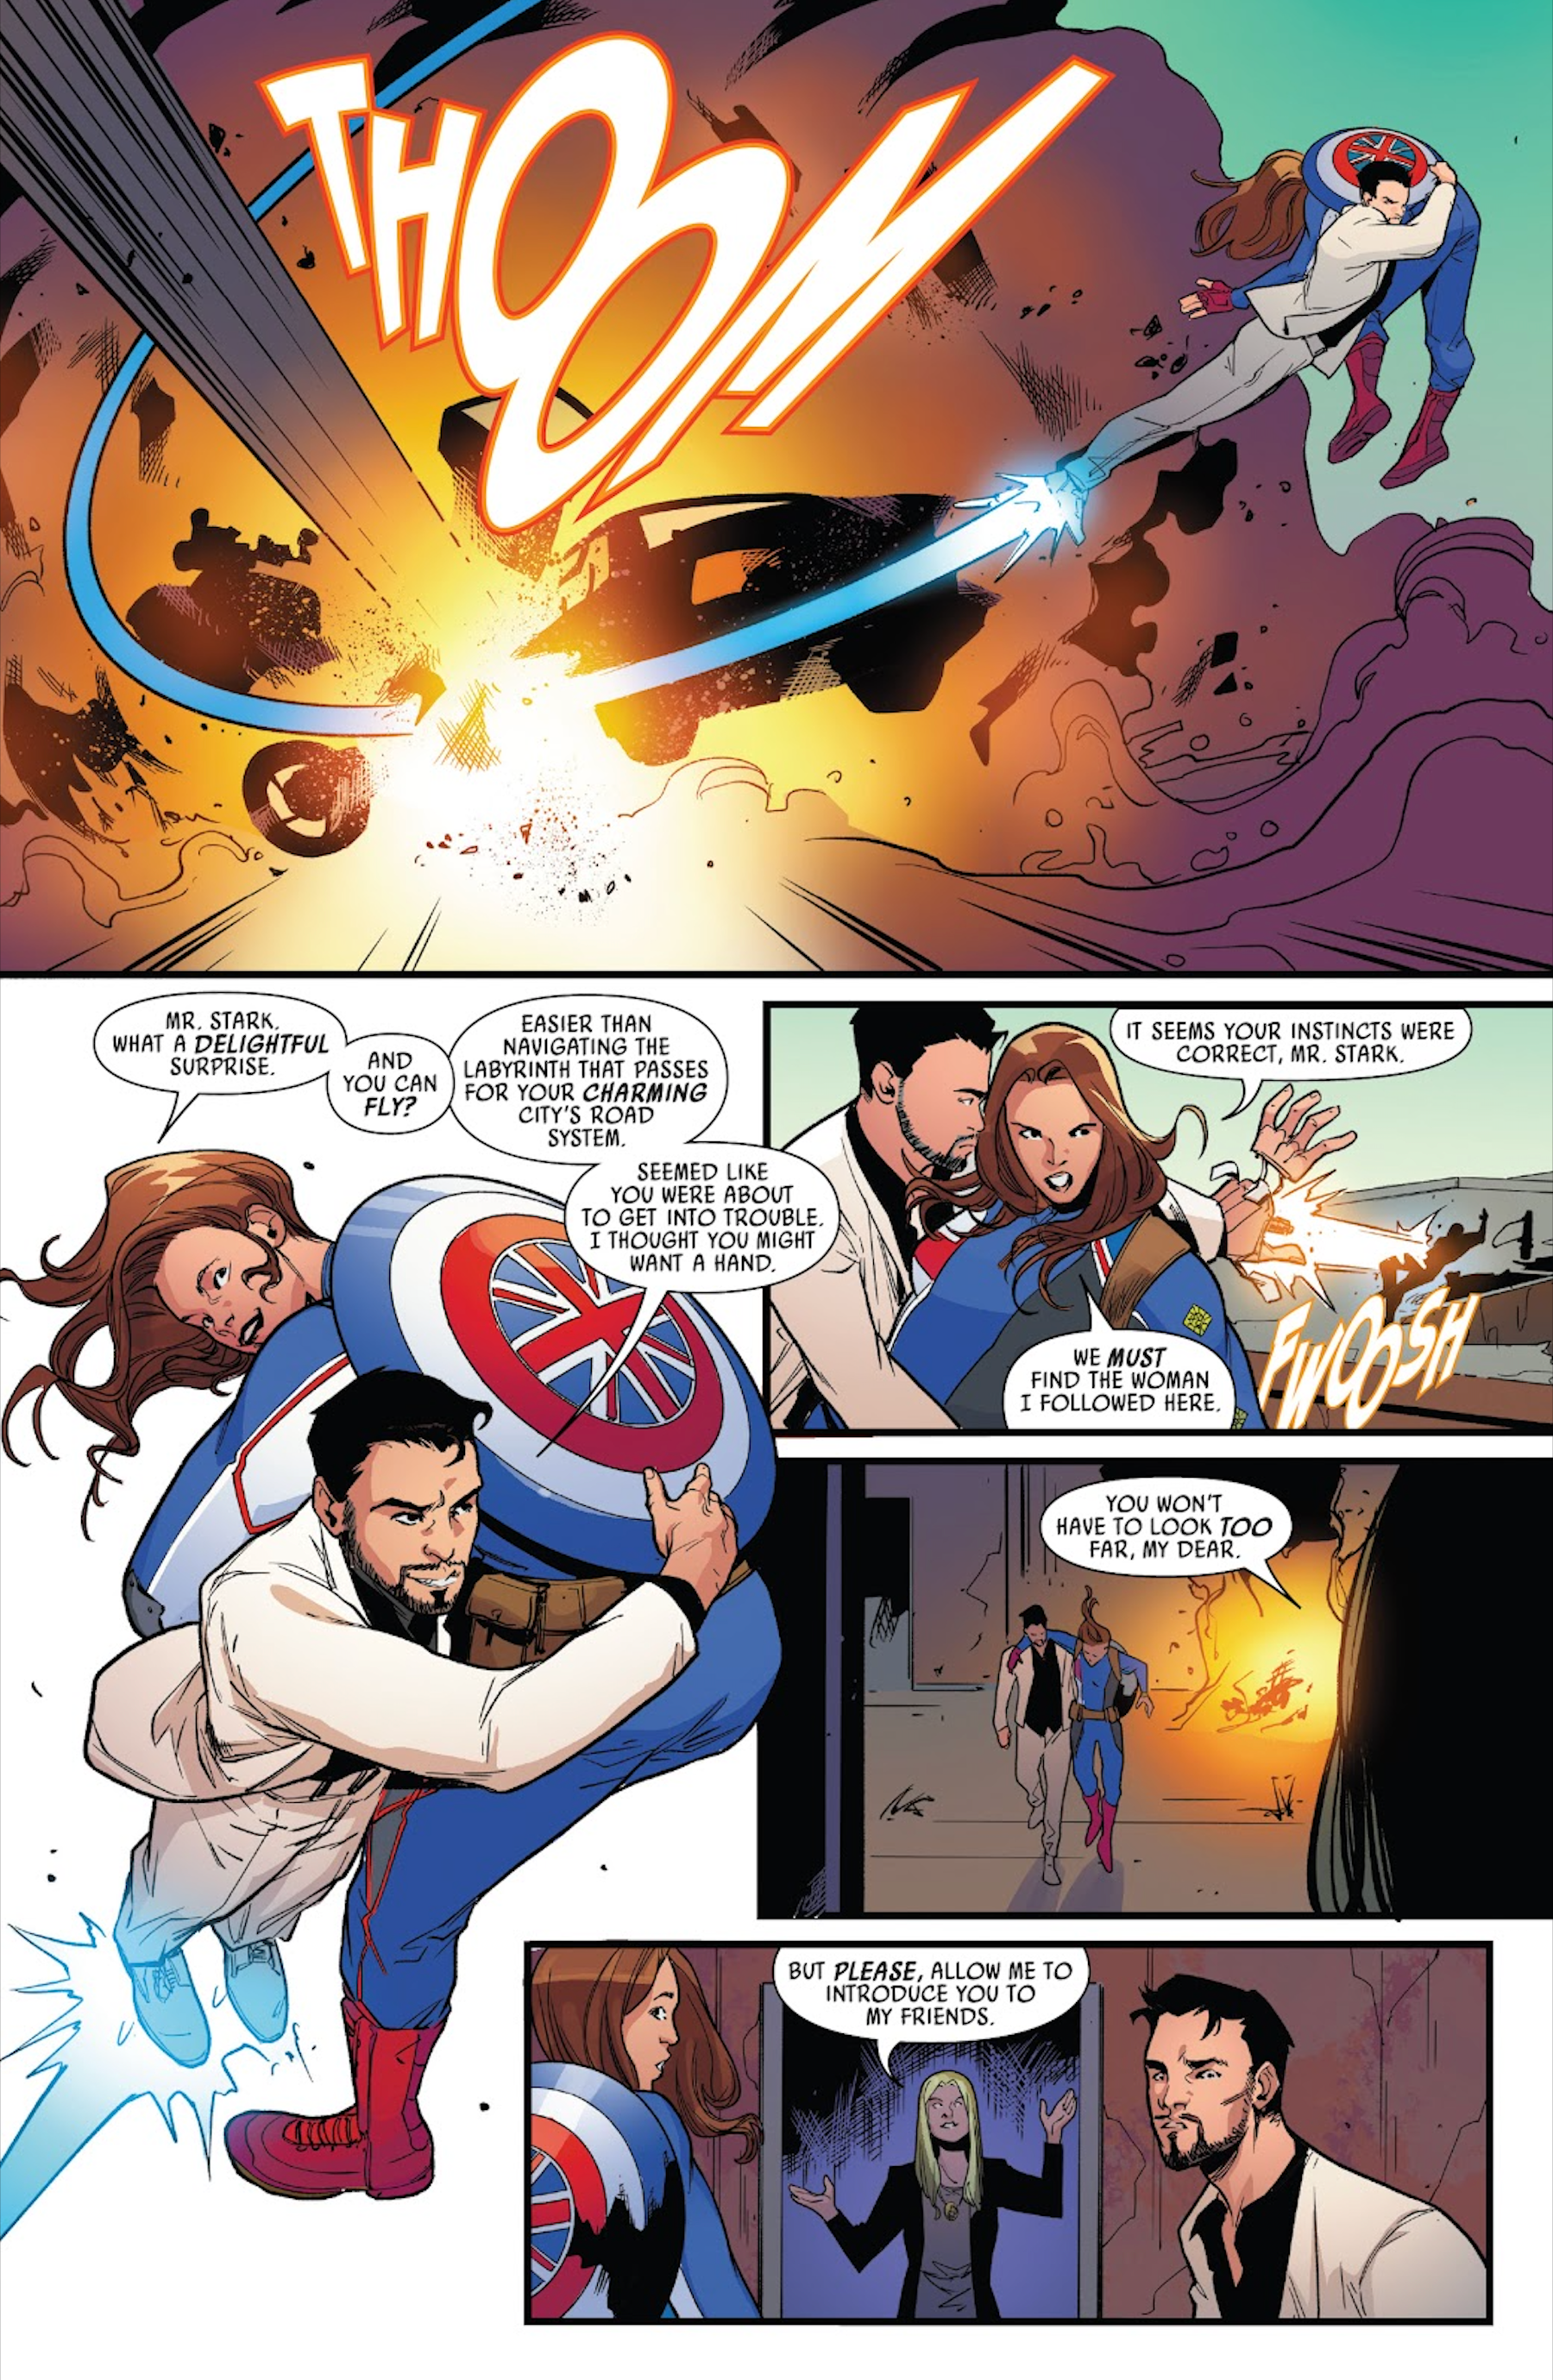 Iron Man saves Captain Carter